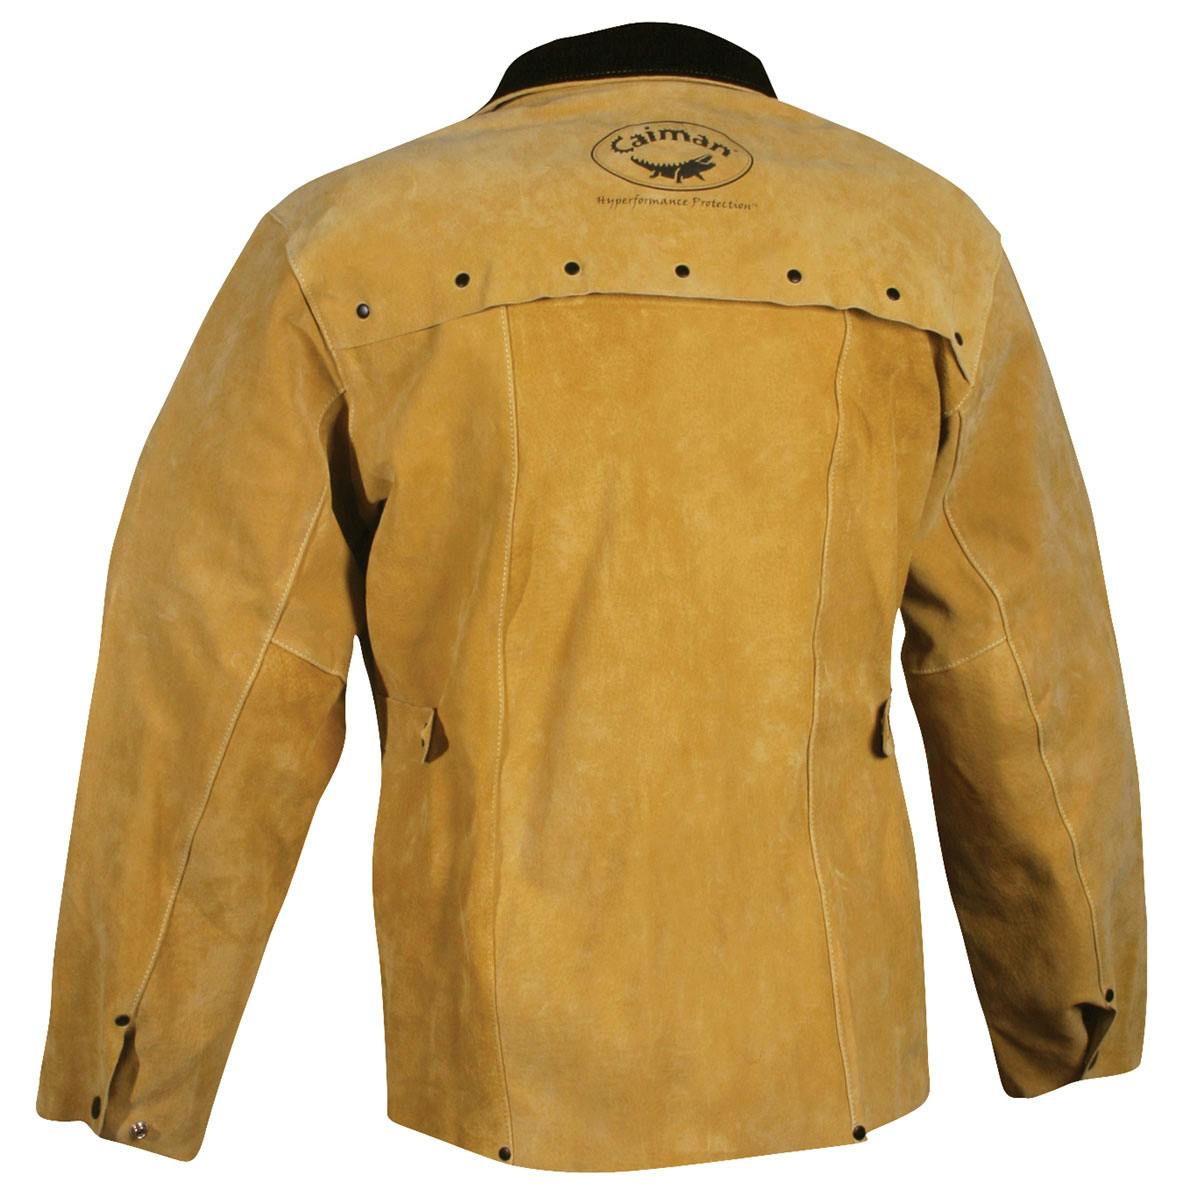 30" Gold Boarhide Coat / Jacket, Gold (3030)